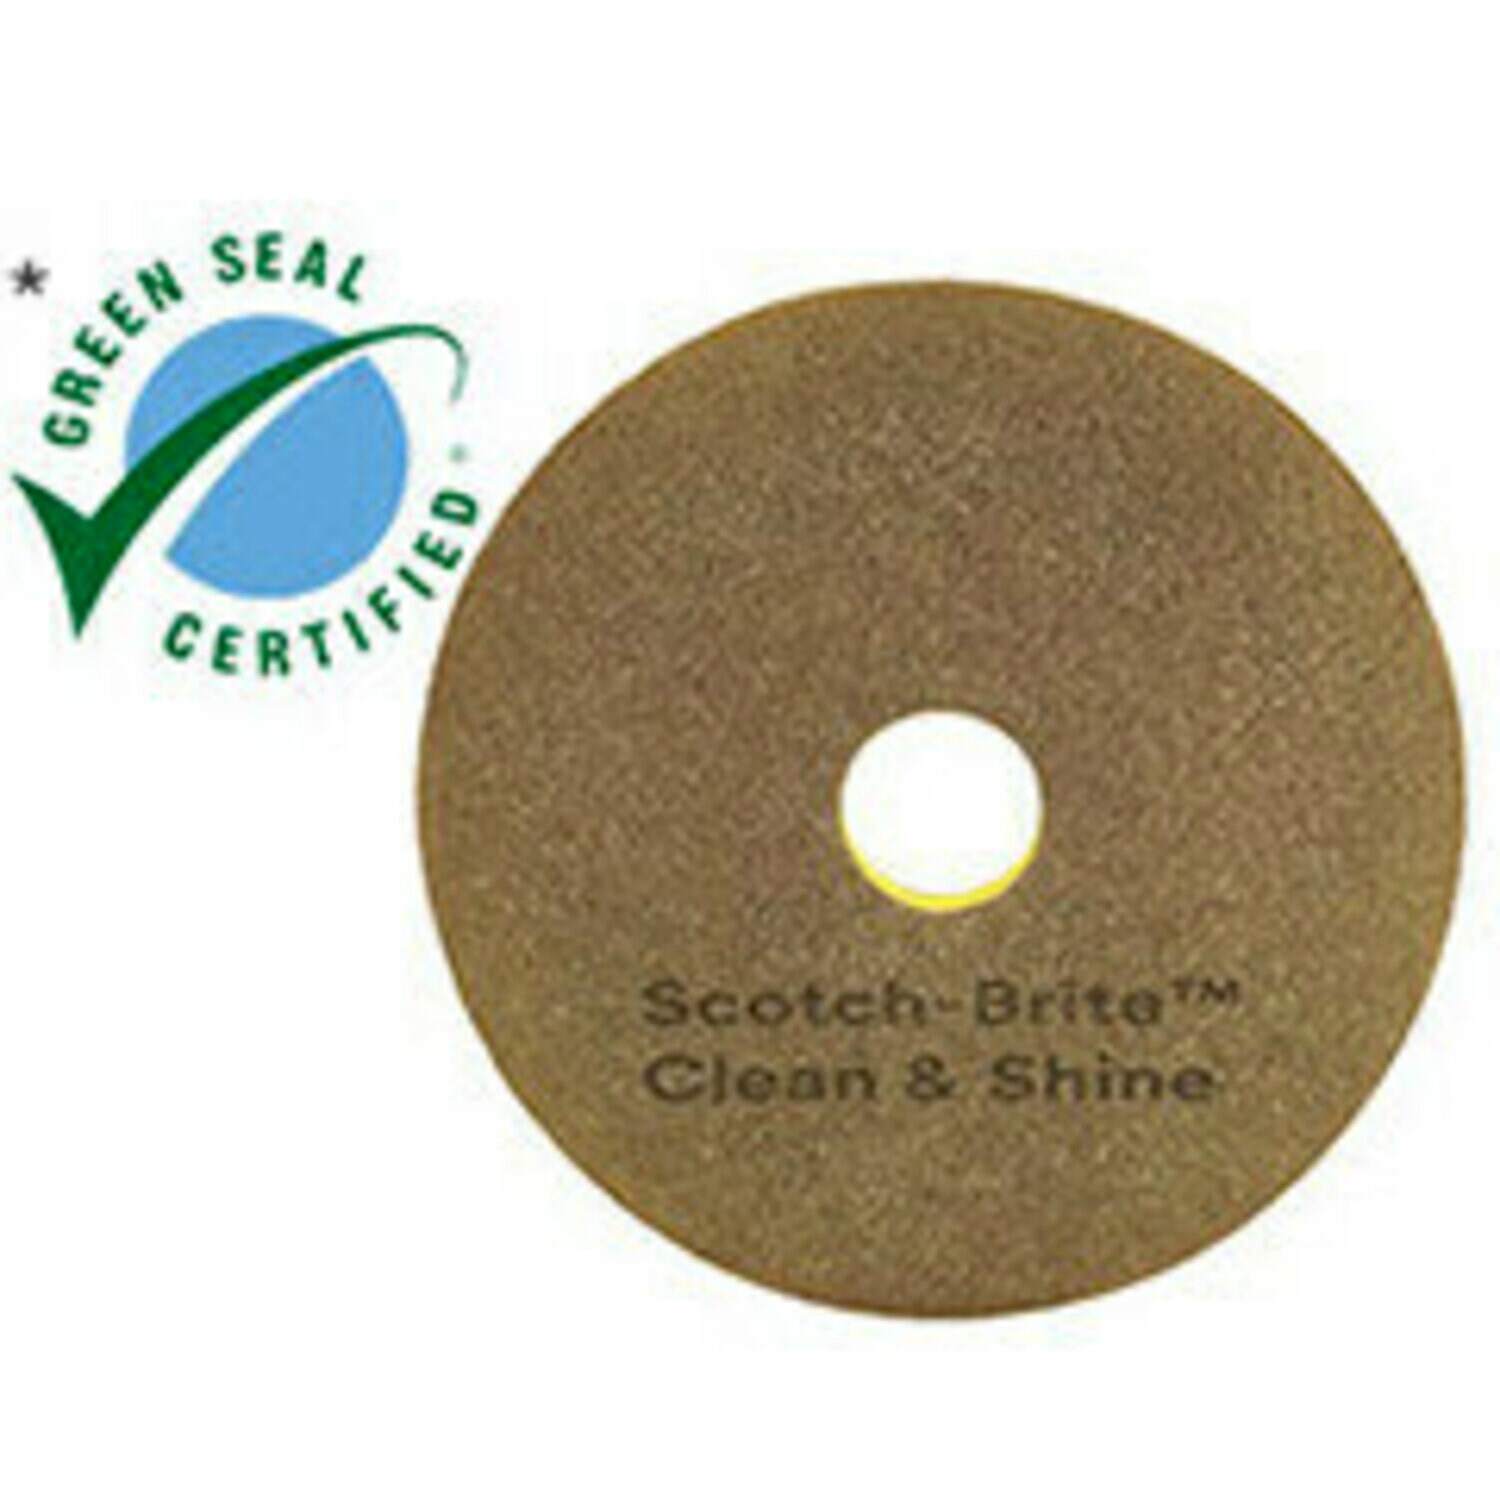 7100148038 - Scotch-Brite Clean & Shine Pad, 14 in, 5/Case